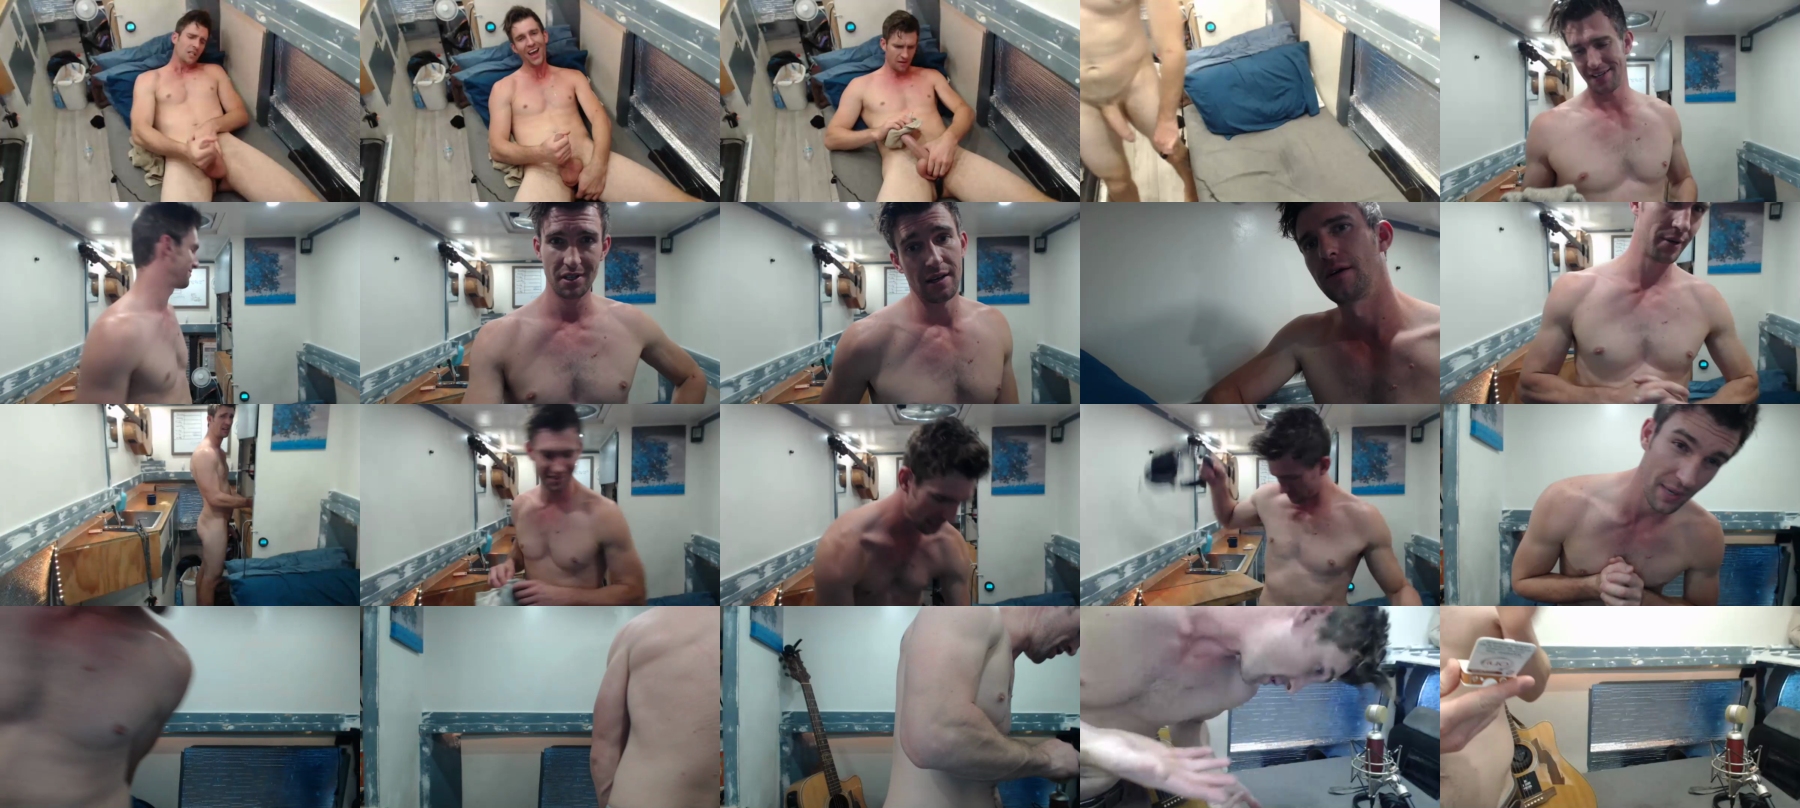 Bryancavallo  08-08-2021 Male Porn